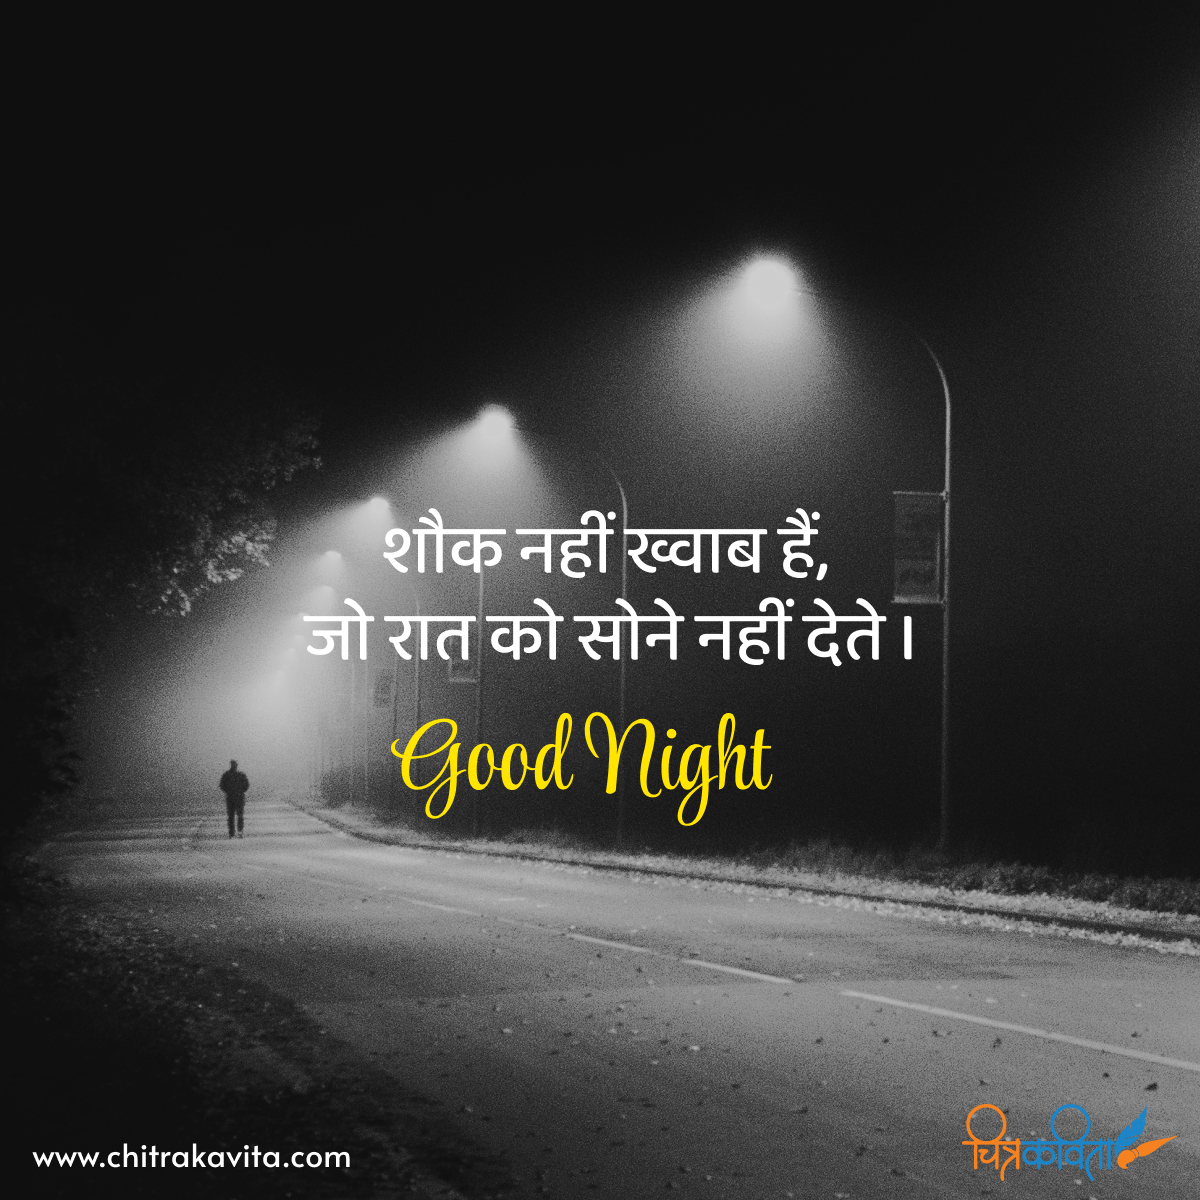 hindi good night quotes, good night status, quotes in hindi, dreams, inspirational, dreams, sleep, good night hindi status